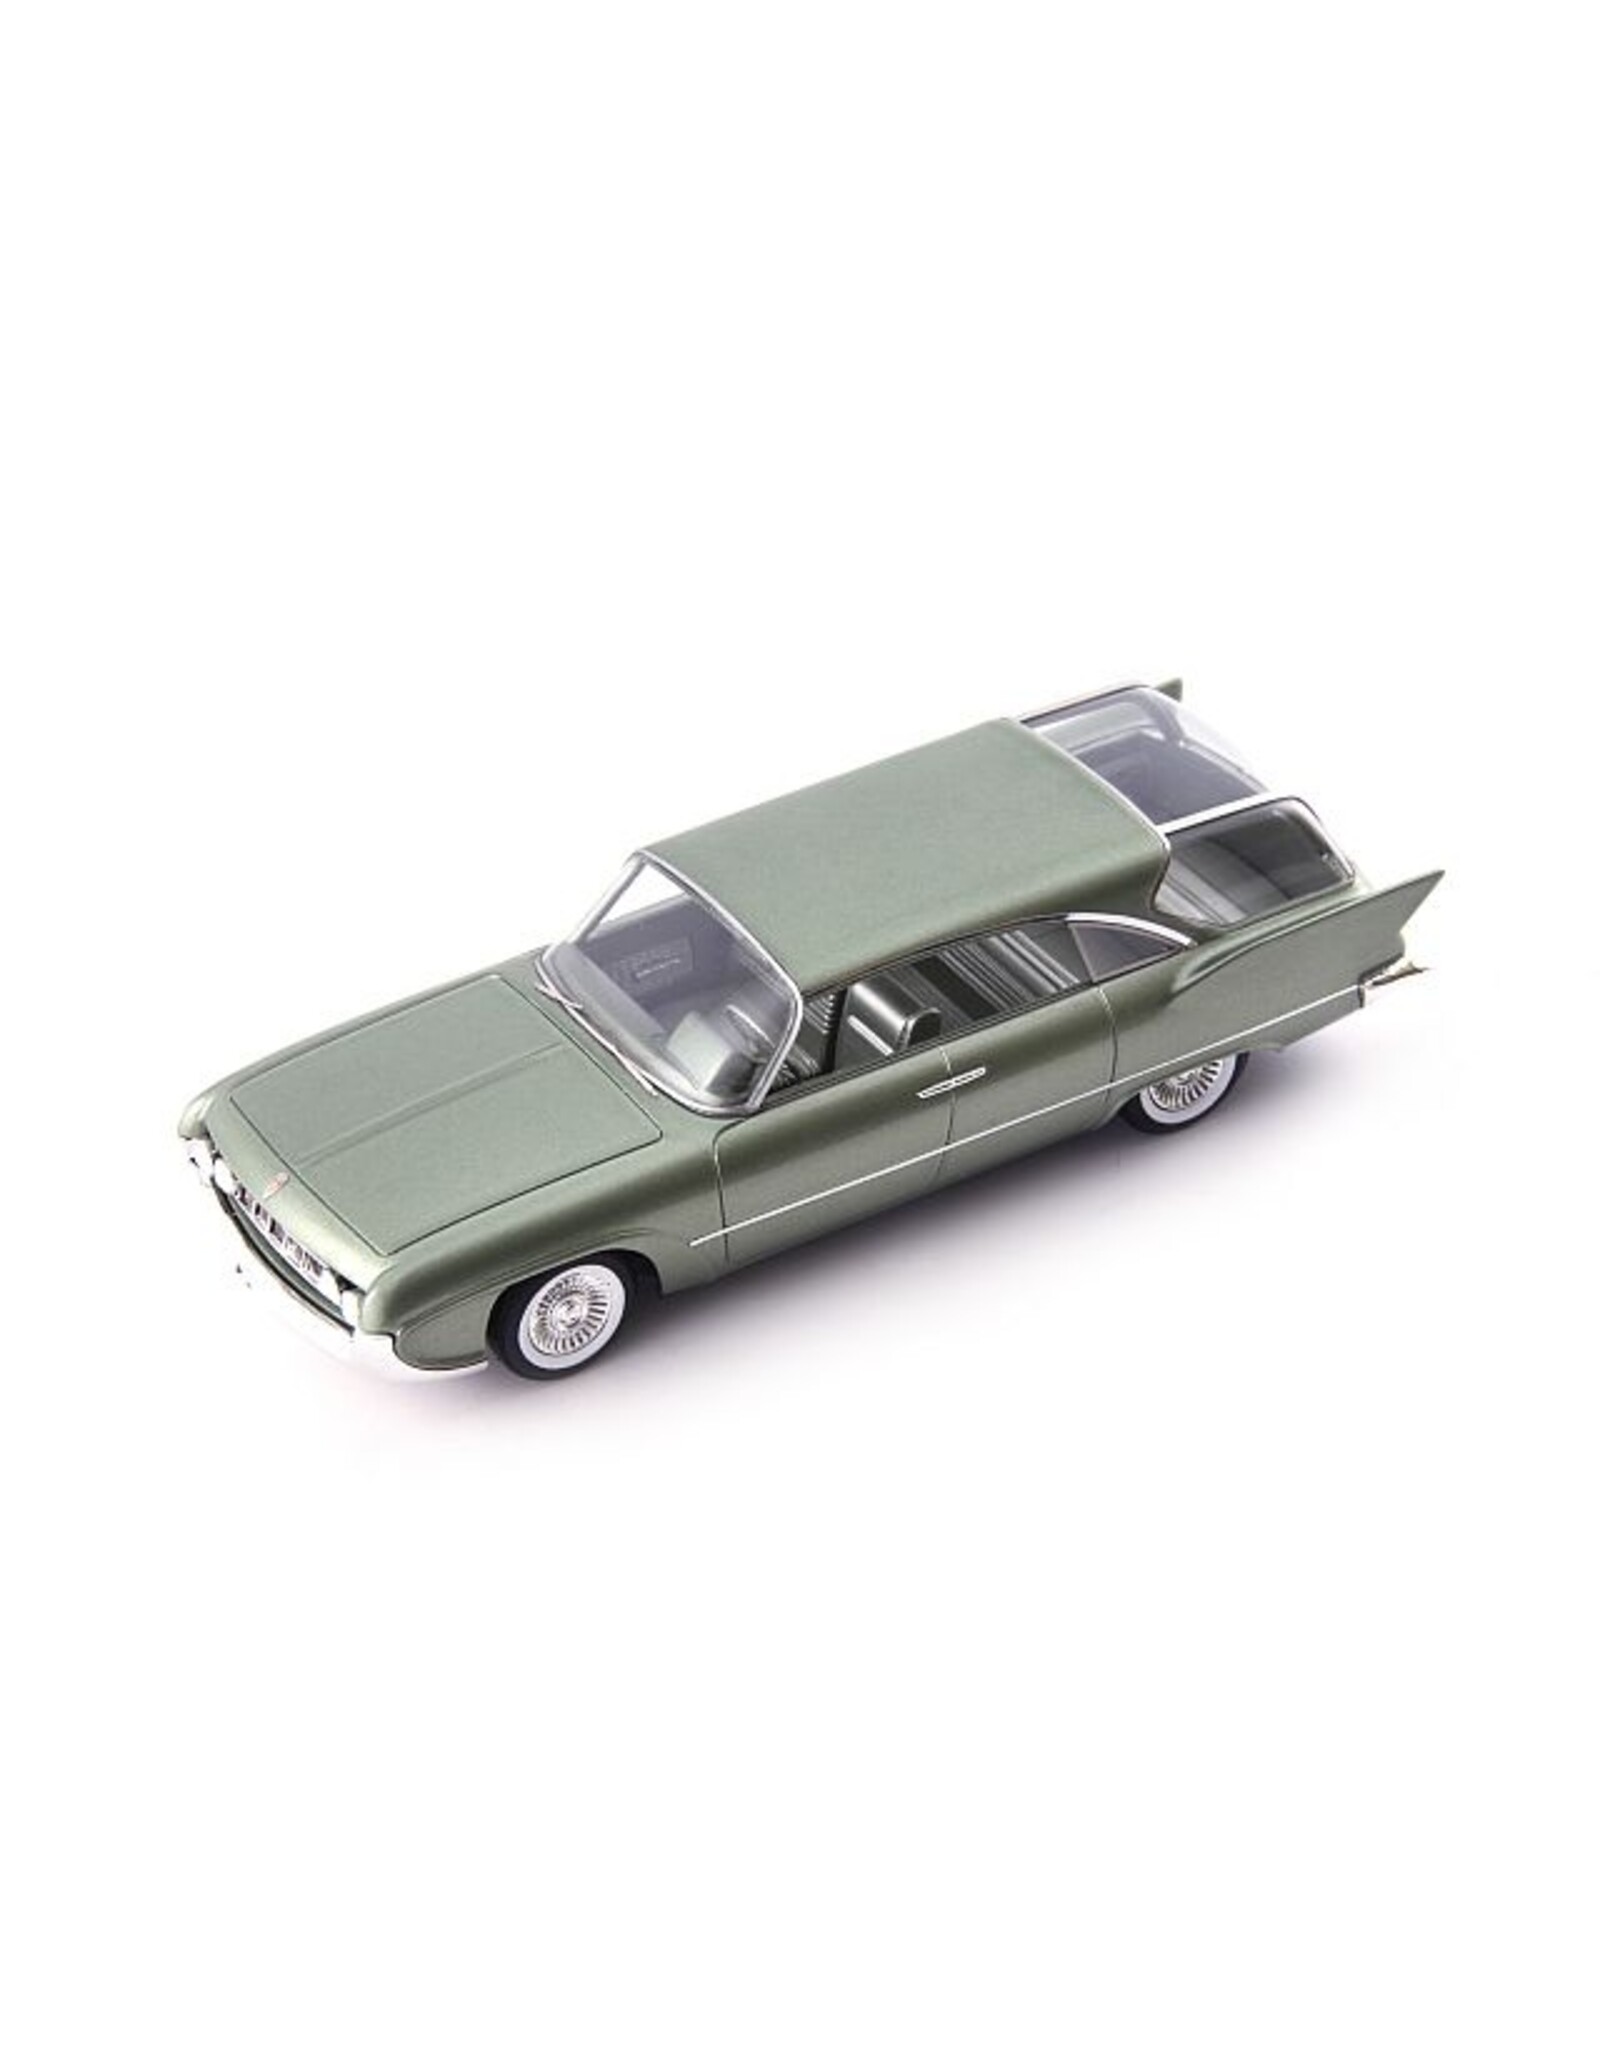 Plymouth Plymouth Cubana Concept(1958)light green metallic